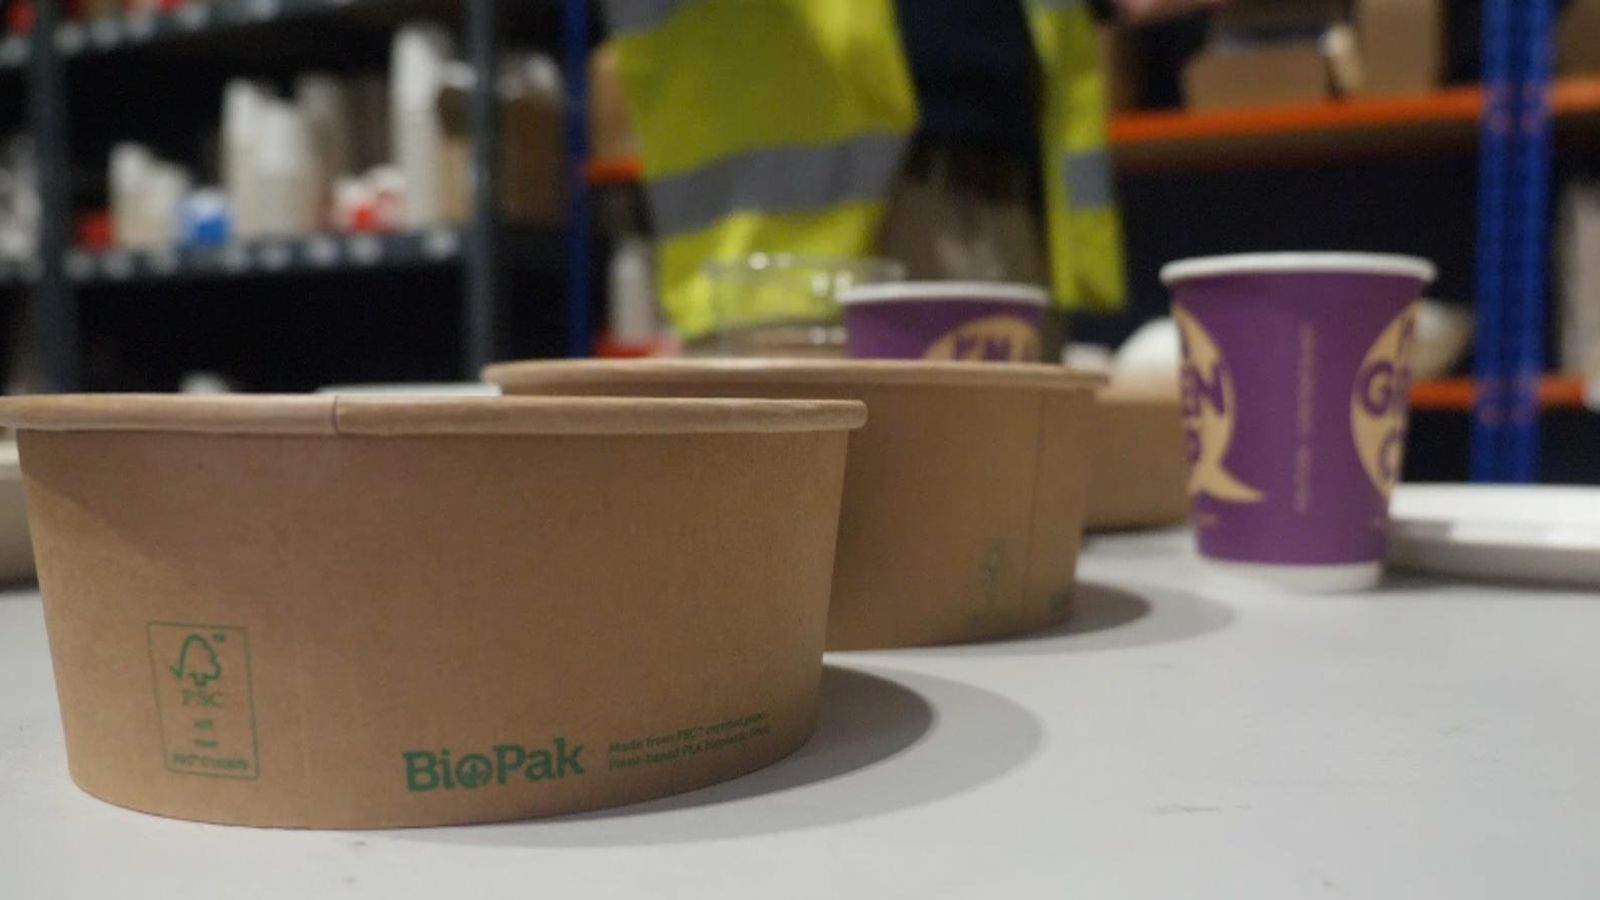 Първа спирка BioPak производител на компостируеми опаковки с фабрики в